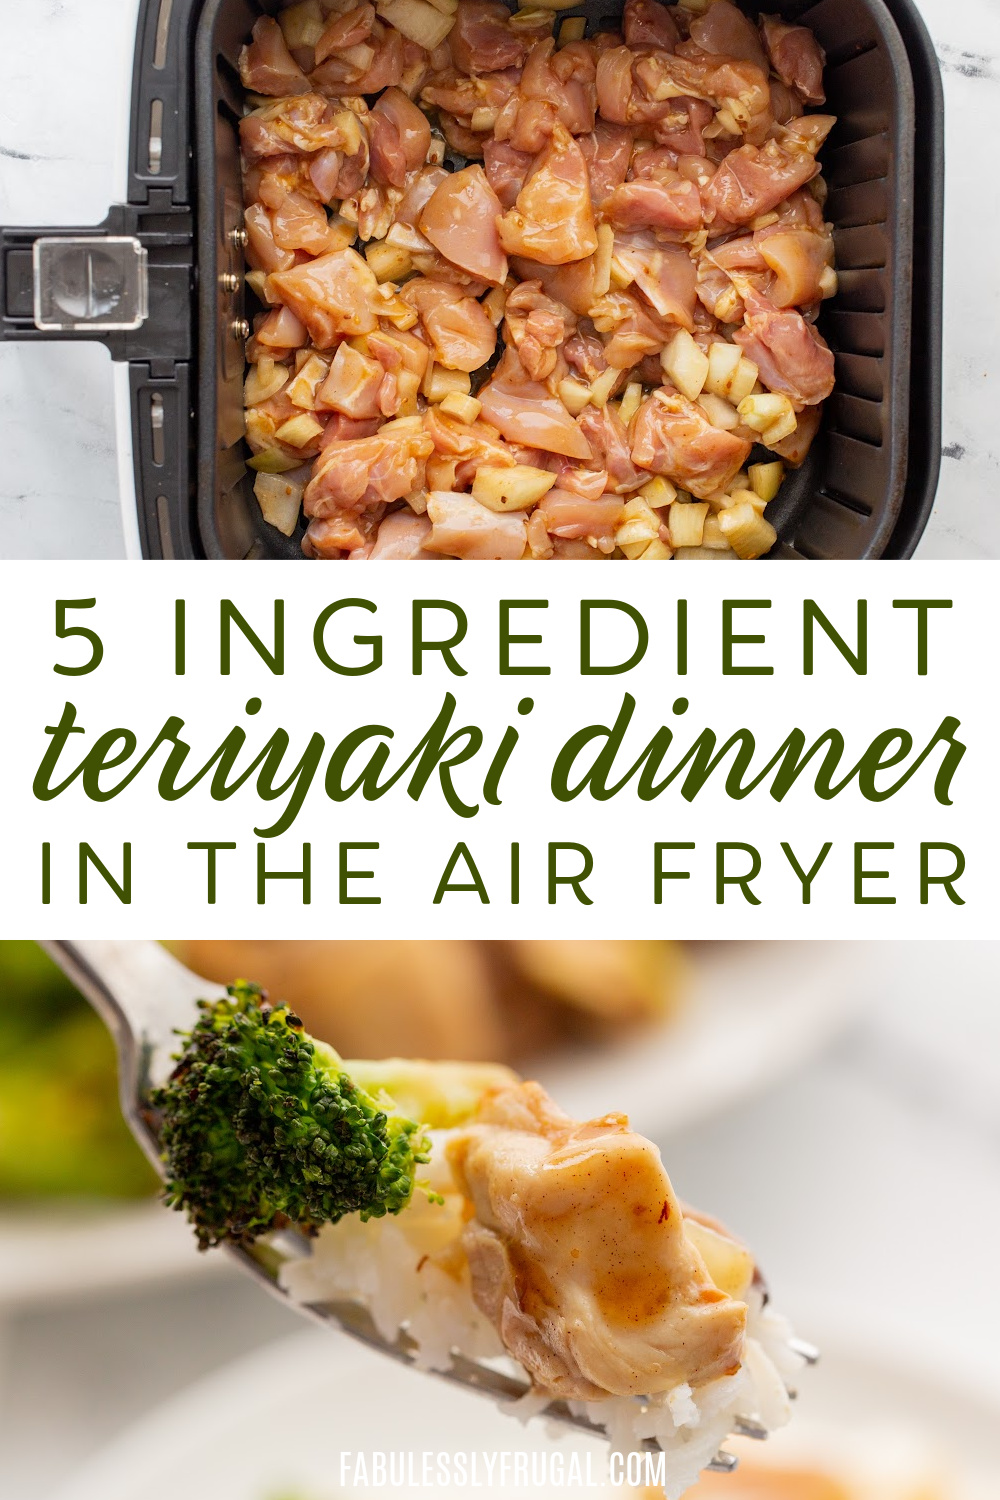 5 ingredient teriyaki dinner in the air fryer